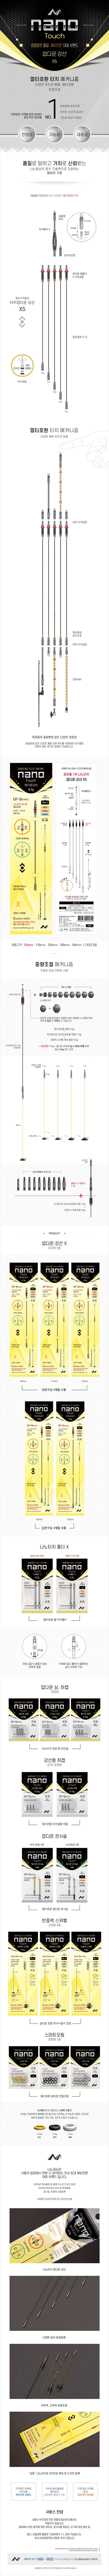 nanox5_1_140050.jpg